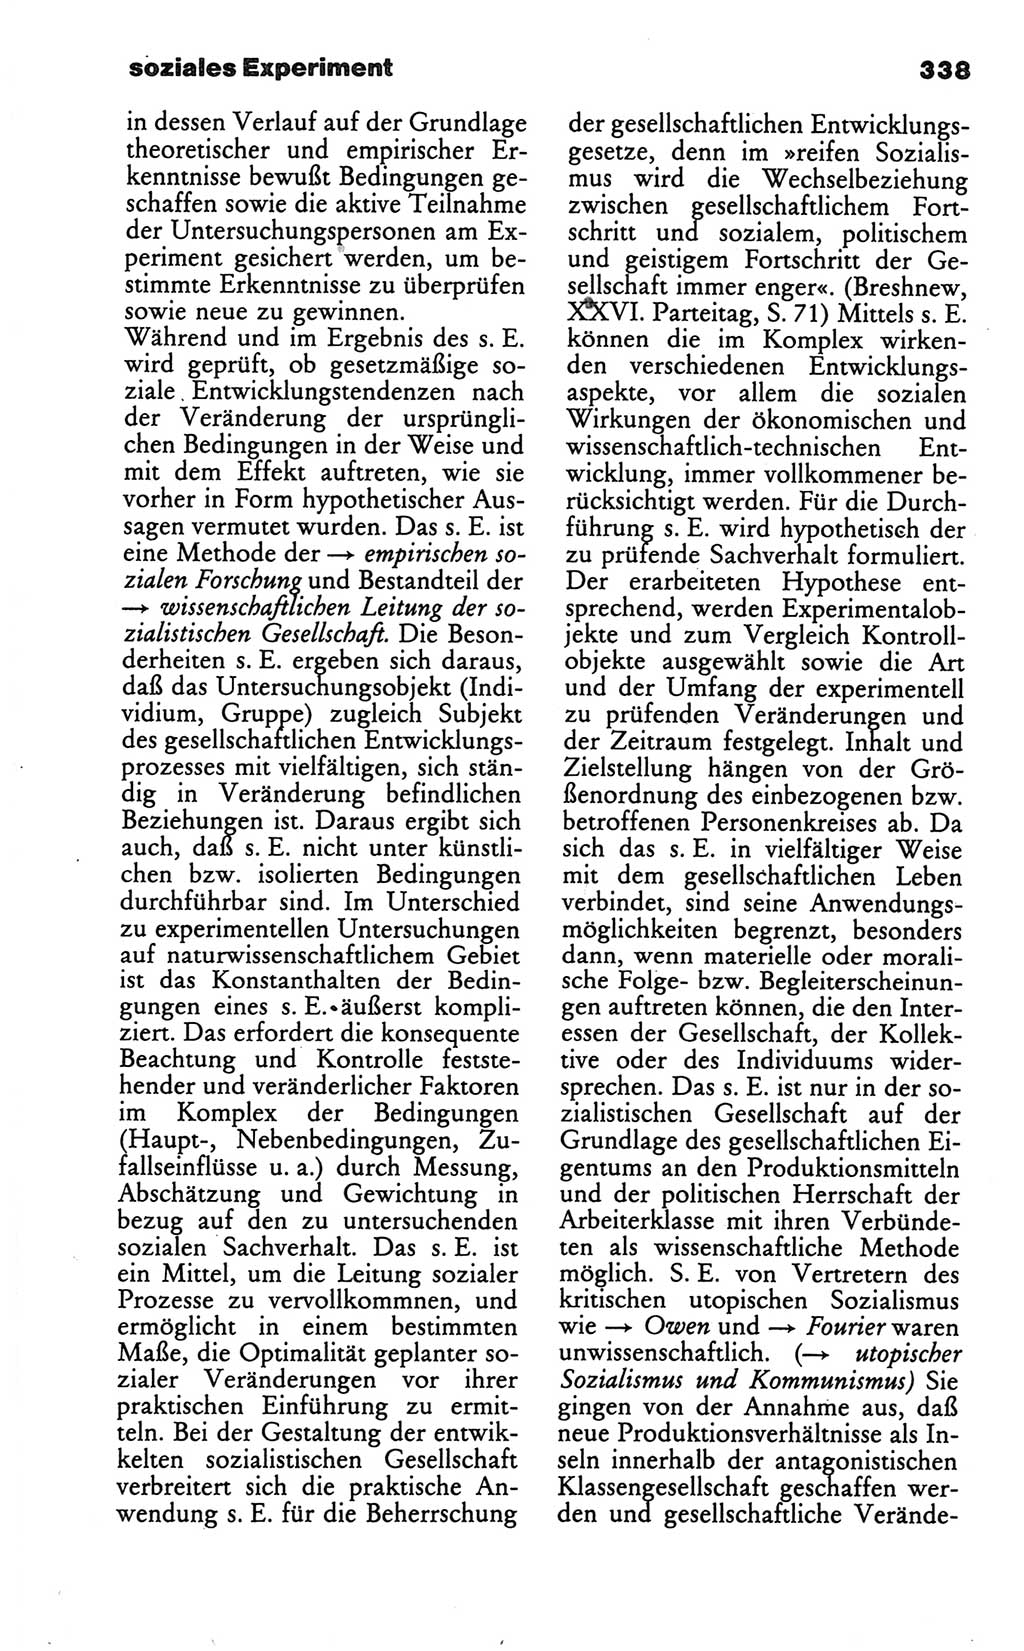 Wörterbuch des wissenschaftlichen Kommunismus [Deutsche Demokratische Republik (DDR)] 1986, Seite 338 (Wb. wiss. Komm. DDR 1986, S. 338)